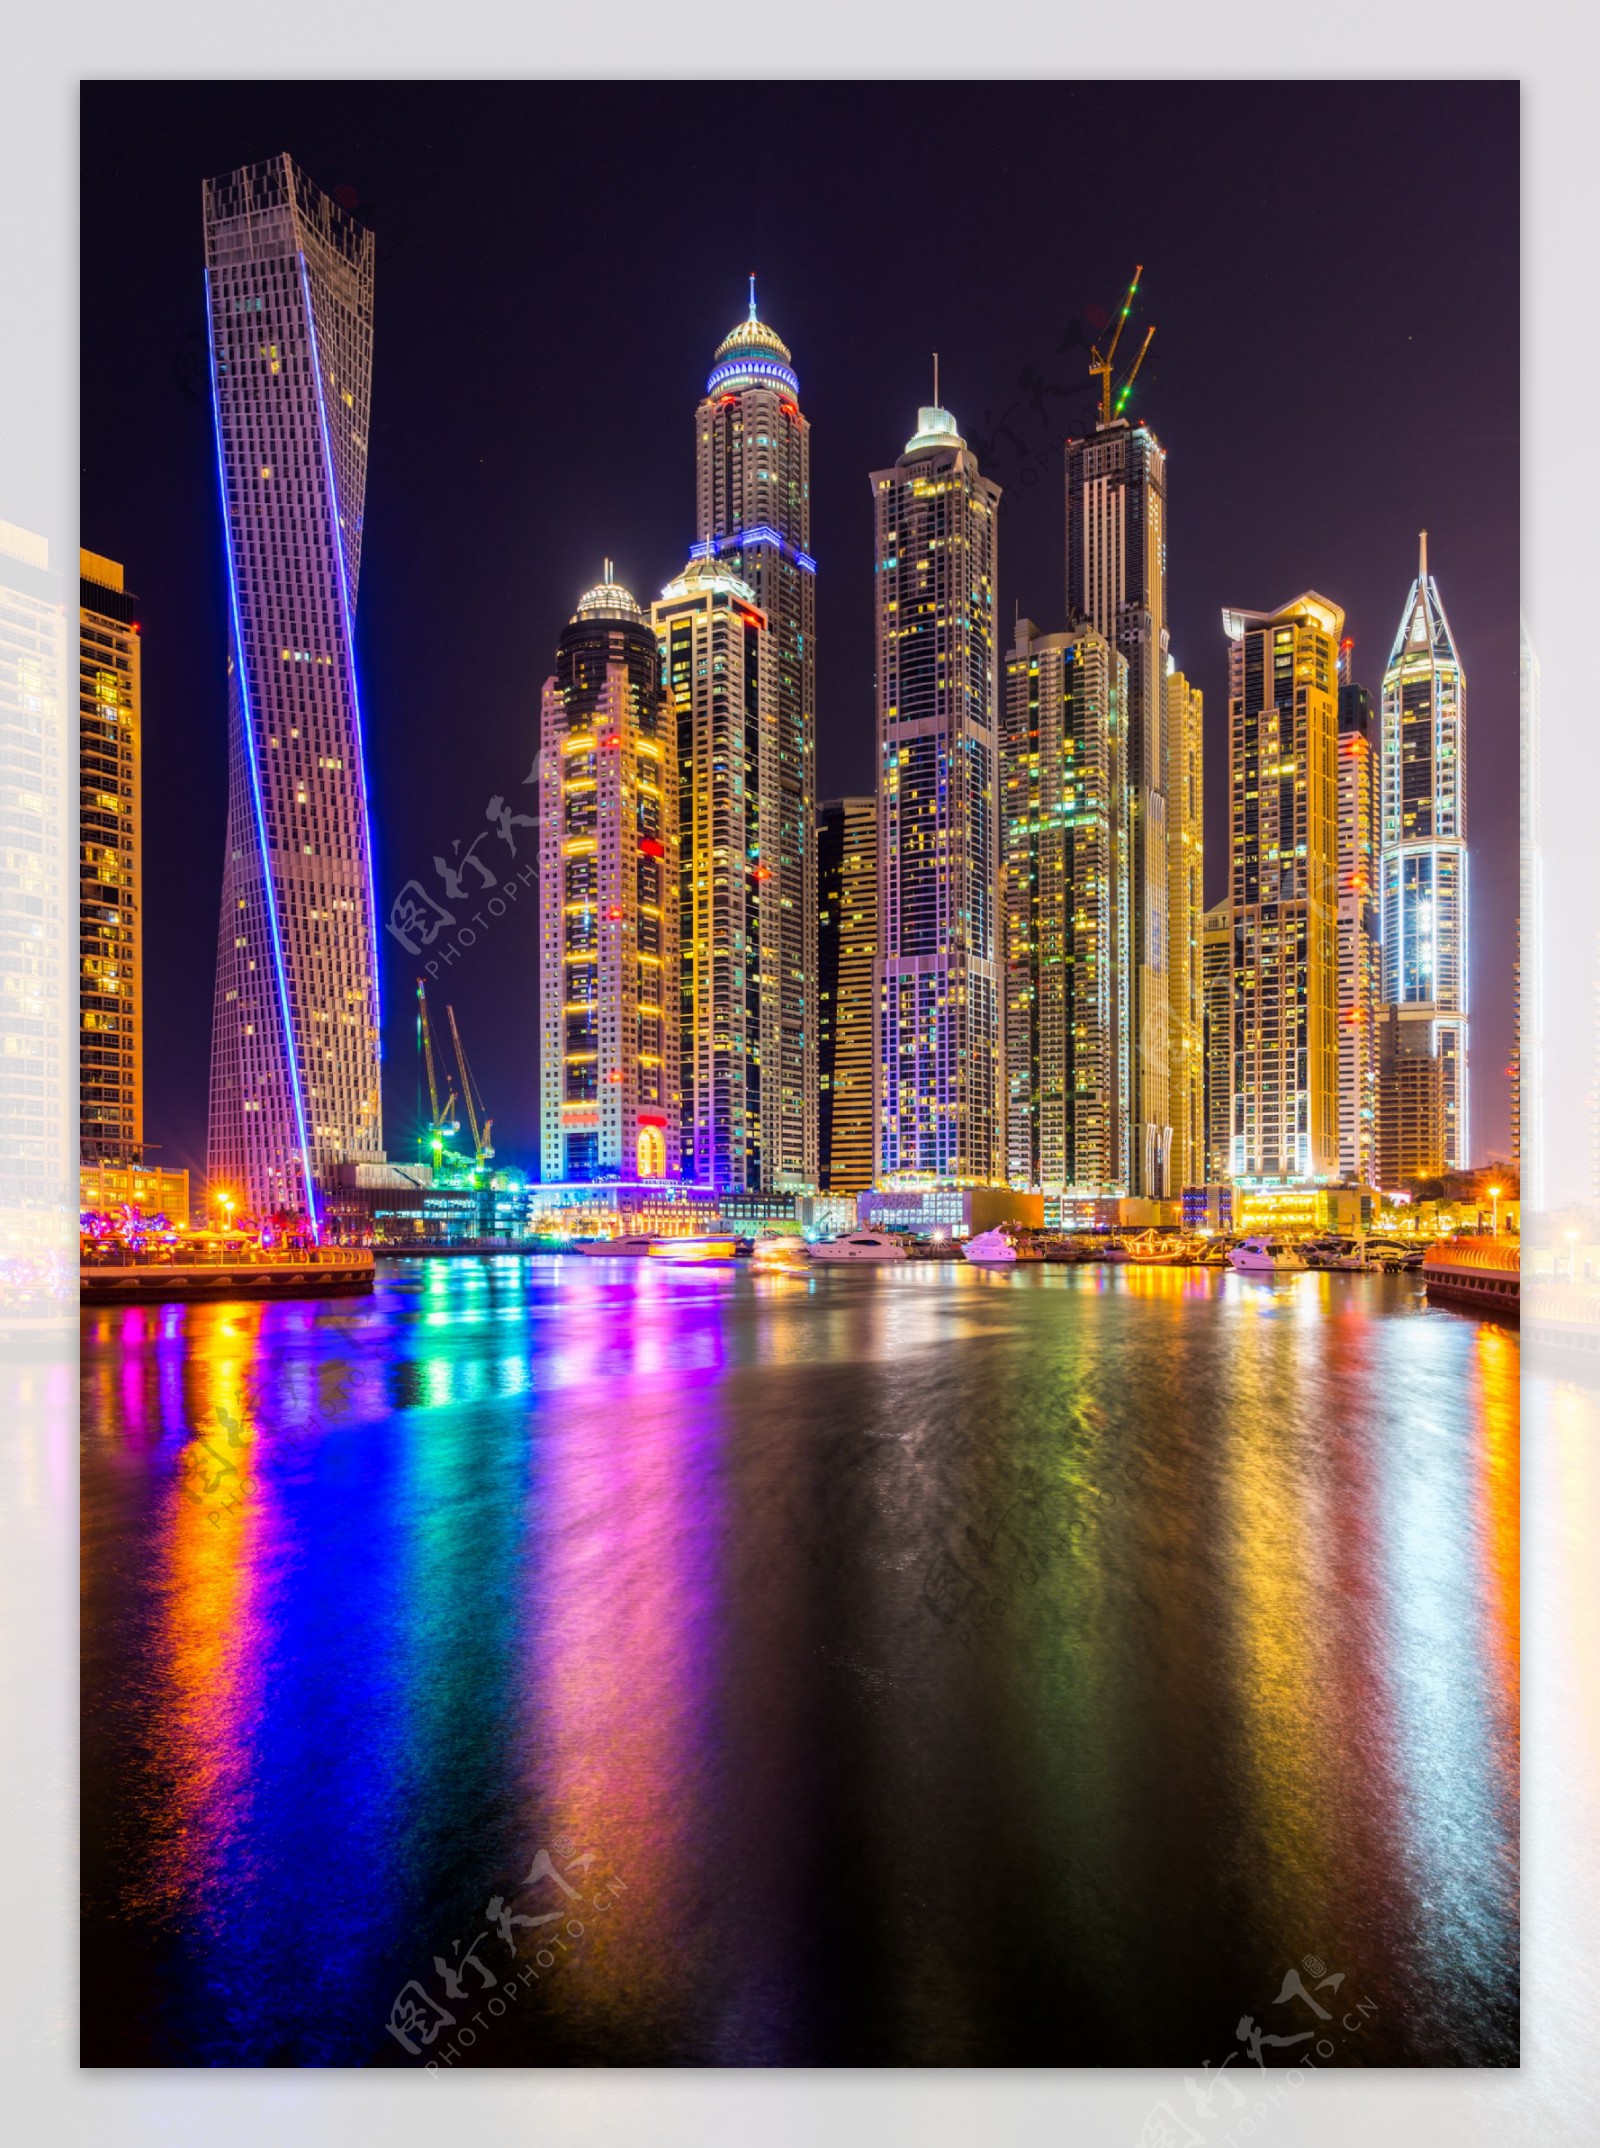 迪拜夜景图片